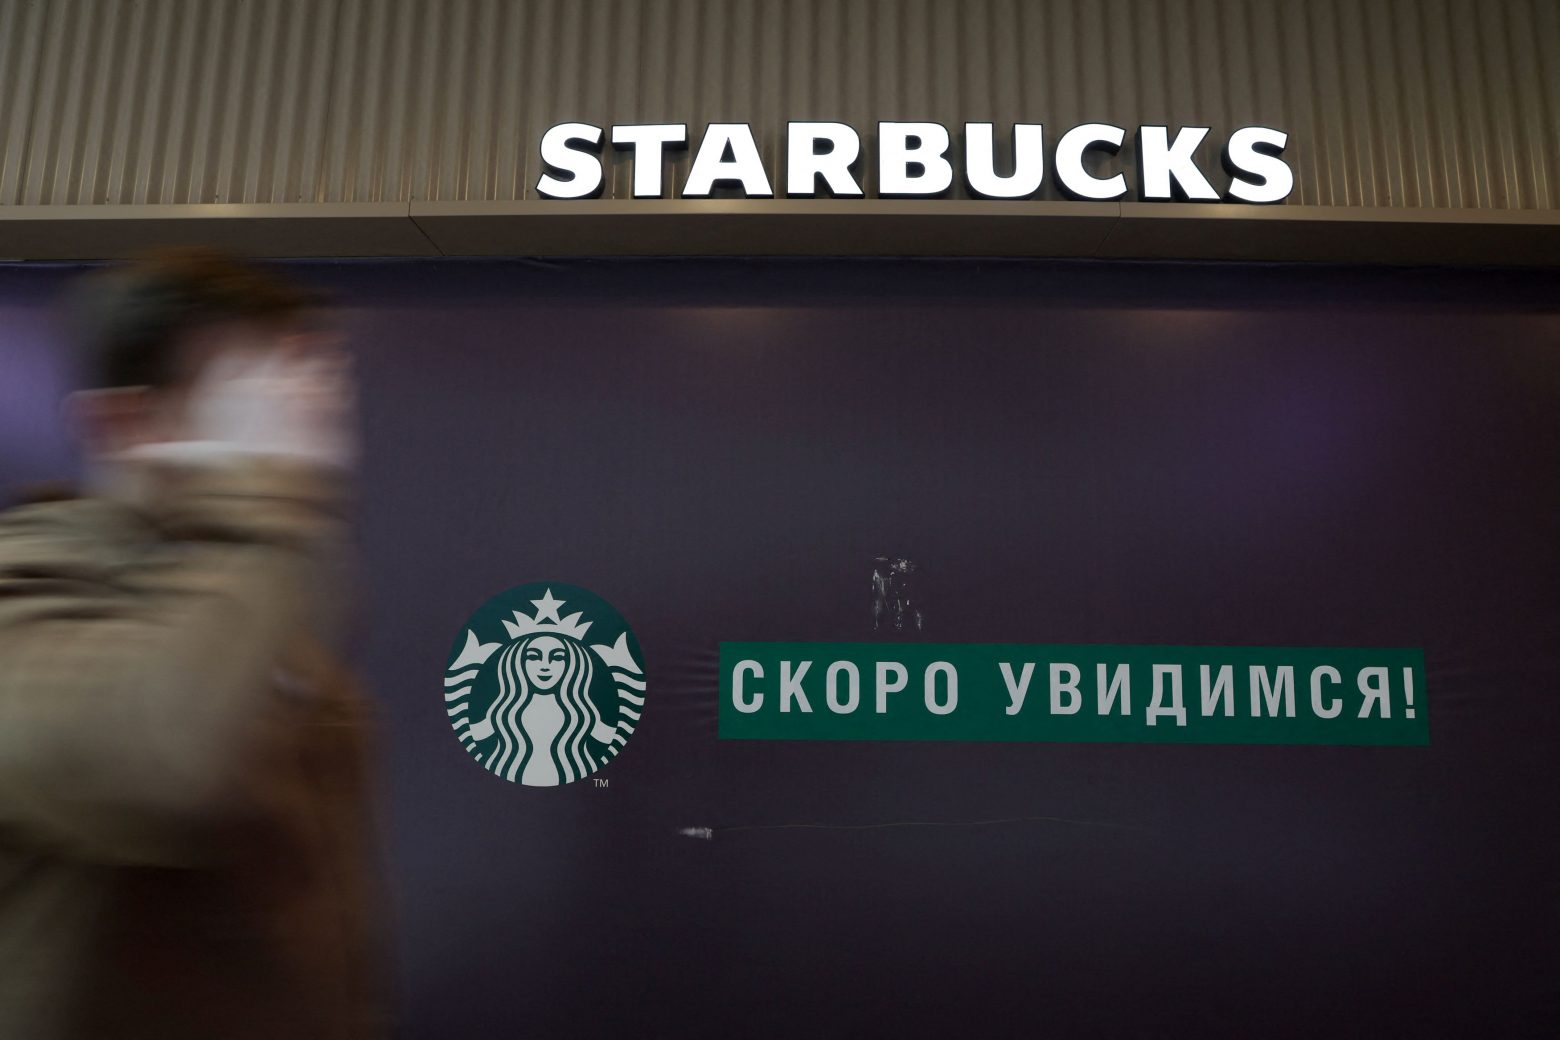 Ρωσία: Μετά από 15 χρόνια τα Starbucks αποχωρούν - Κλείνουν 130 καταστήματα